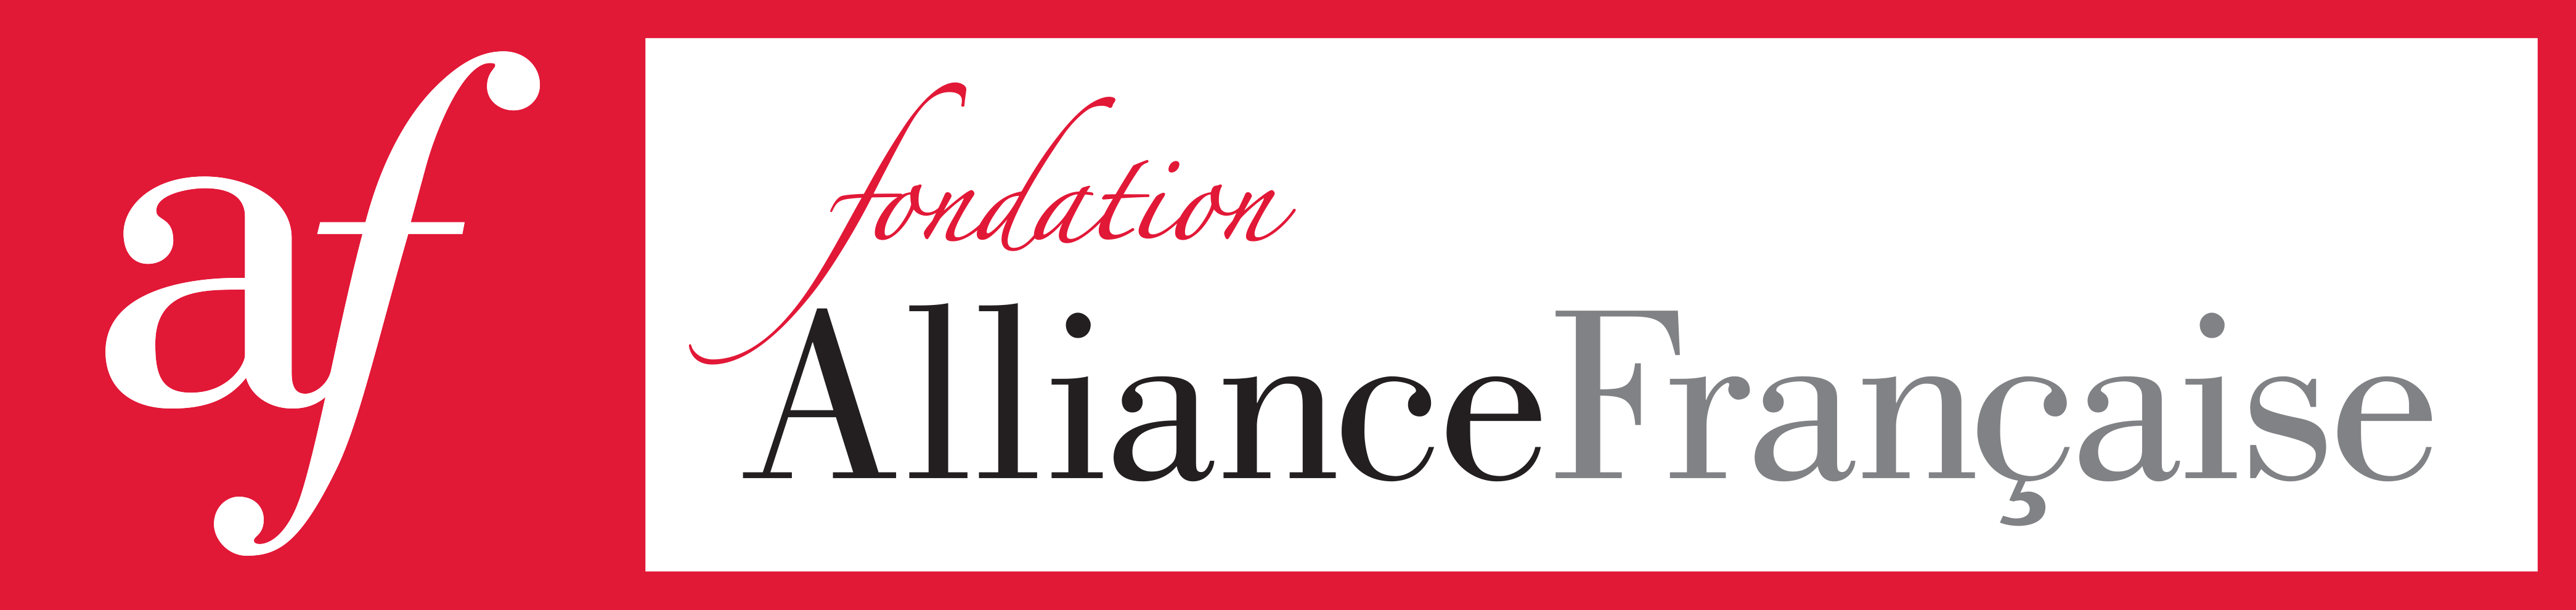 Fondation Alliance Française